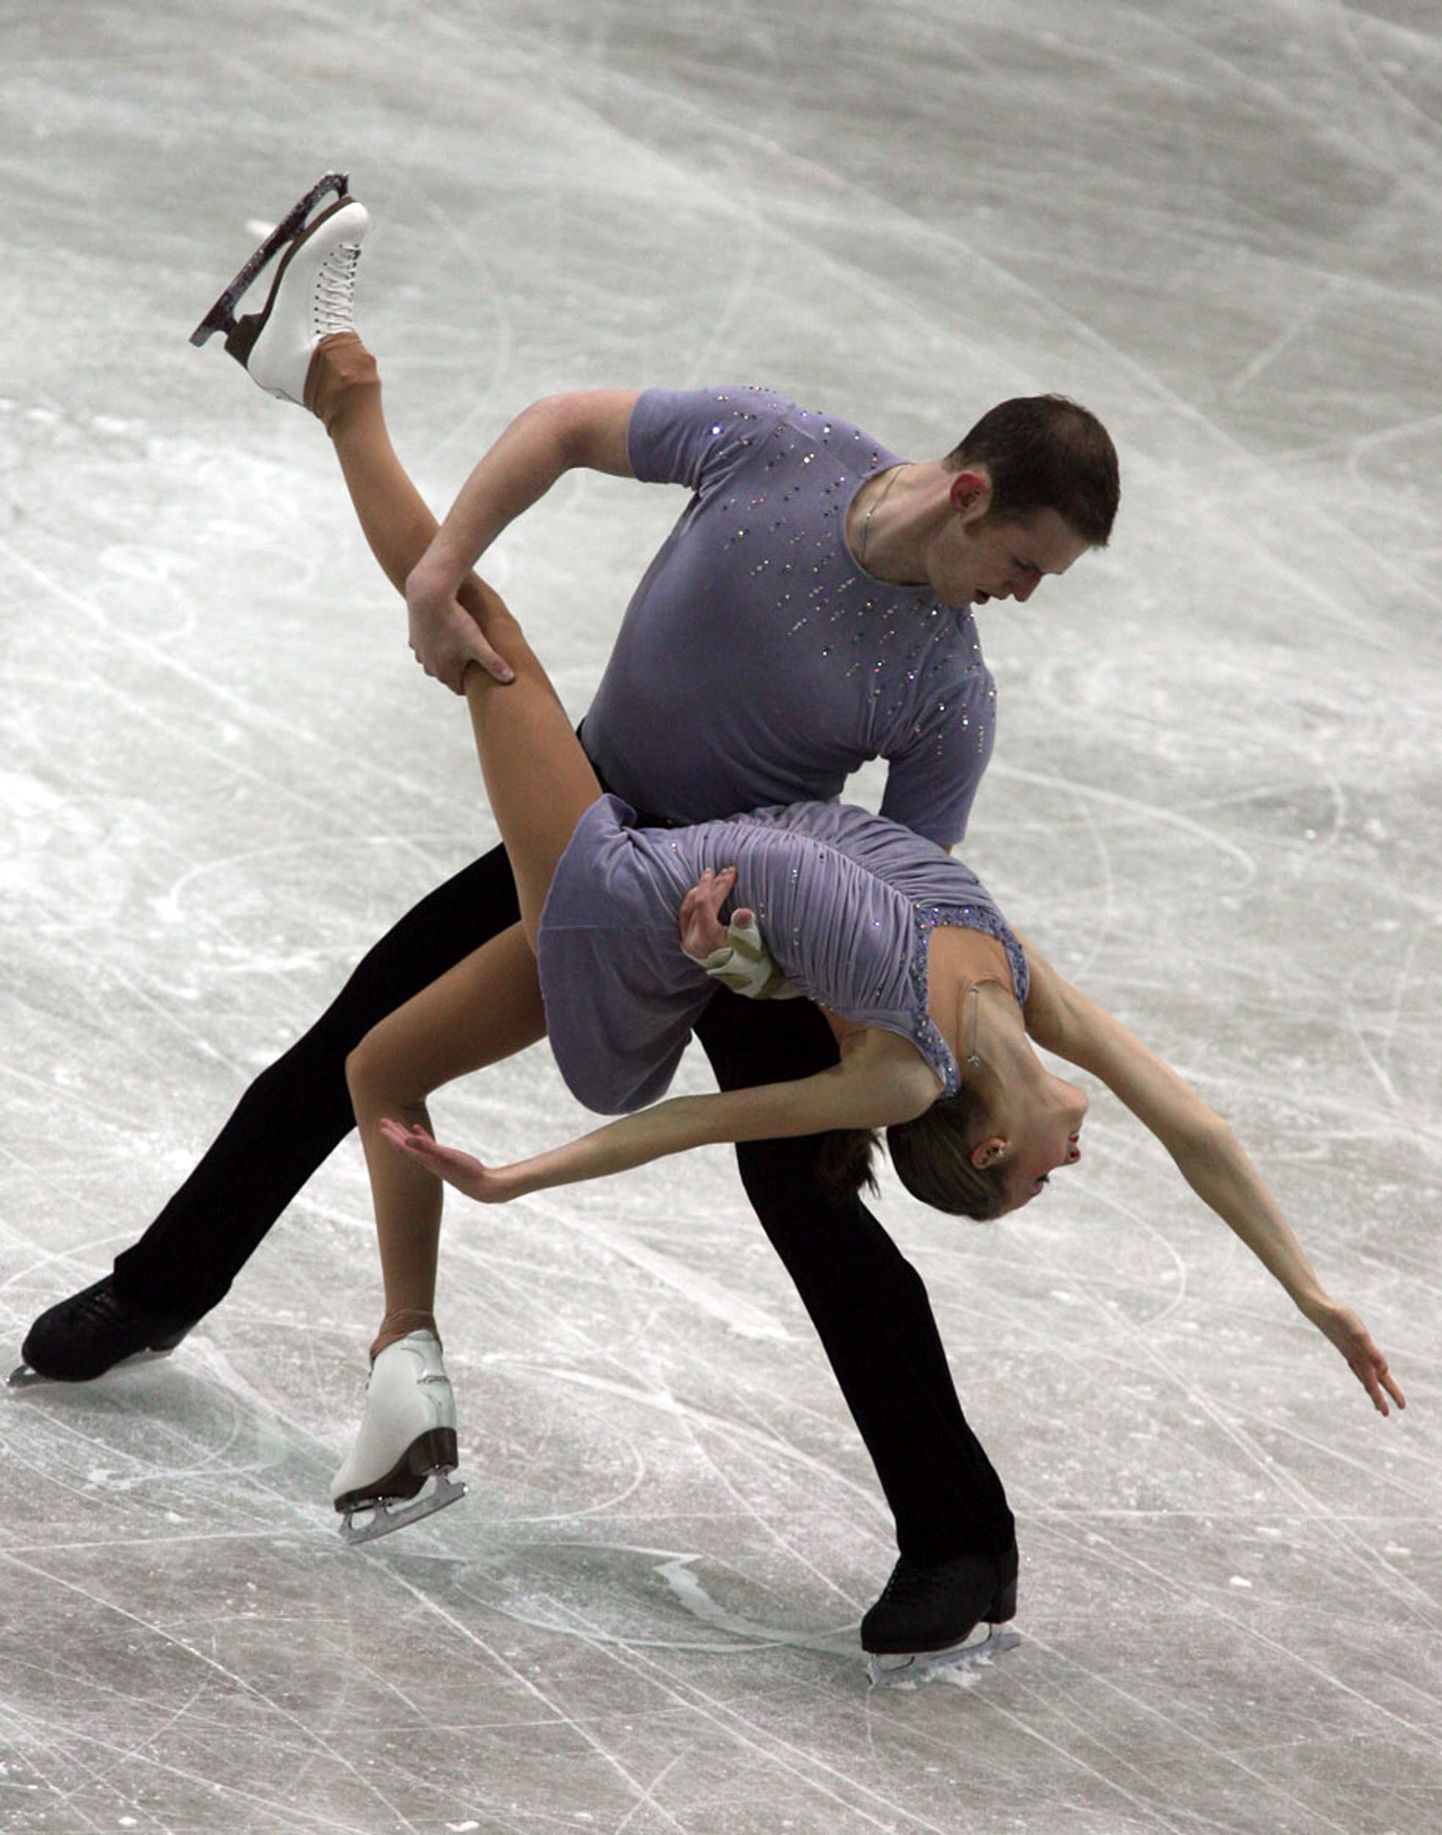 Bridget Namiotka ja John Coughlin 2006. aastal võistlemas.